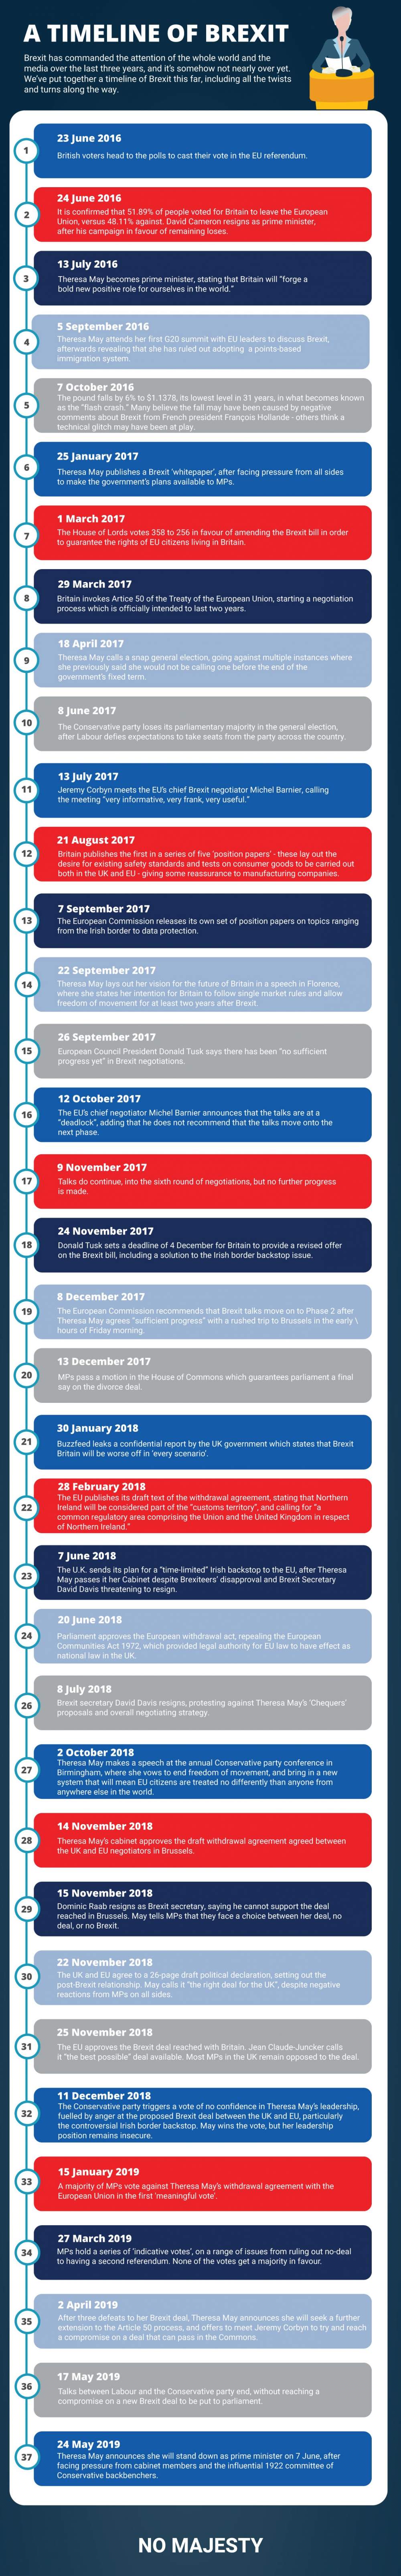 Timeline of Brexit